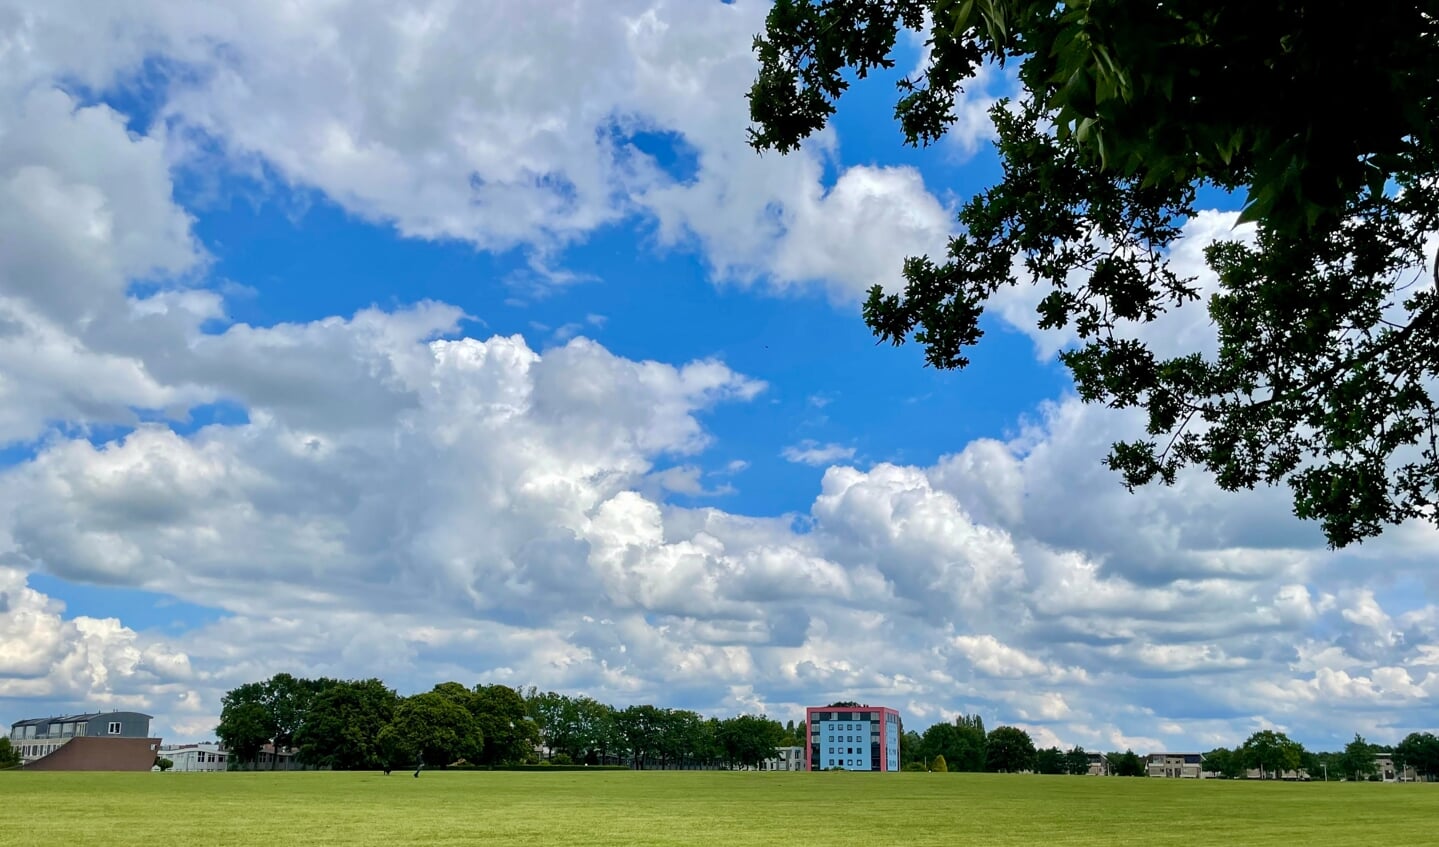 Deze foto is genomen op 1 juni. We wandelden aan de rand van stadspark Schothorst op het Enkeerpad met uitzicht op het Vliegerveld, een enorme vrije ruimte met volop zicht op de lucht. Onder zoveel wolken wordt zelfs het Castellum klein.